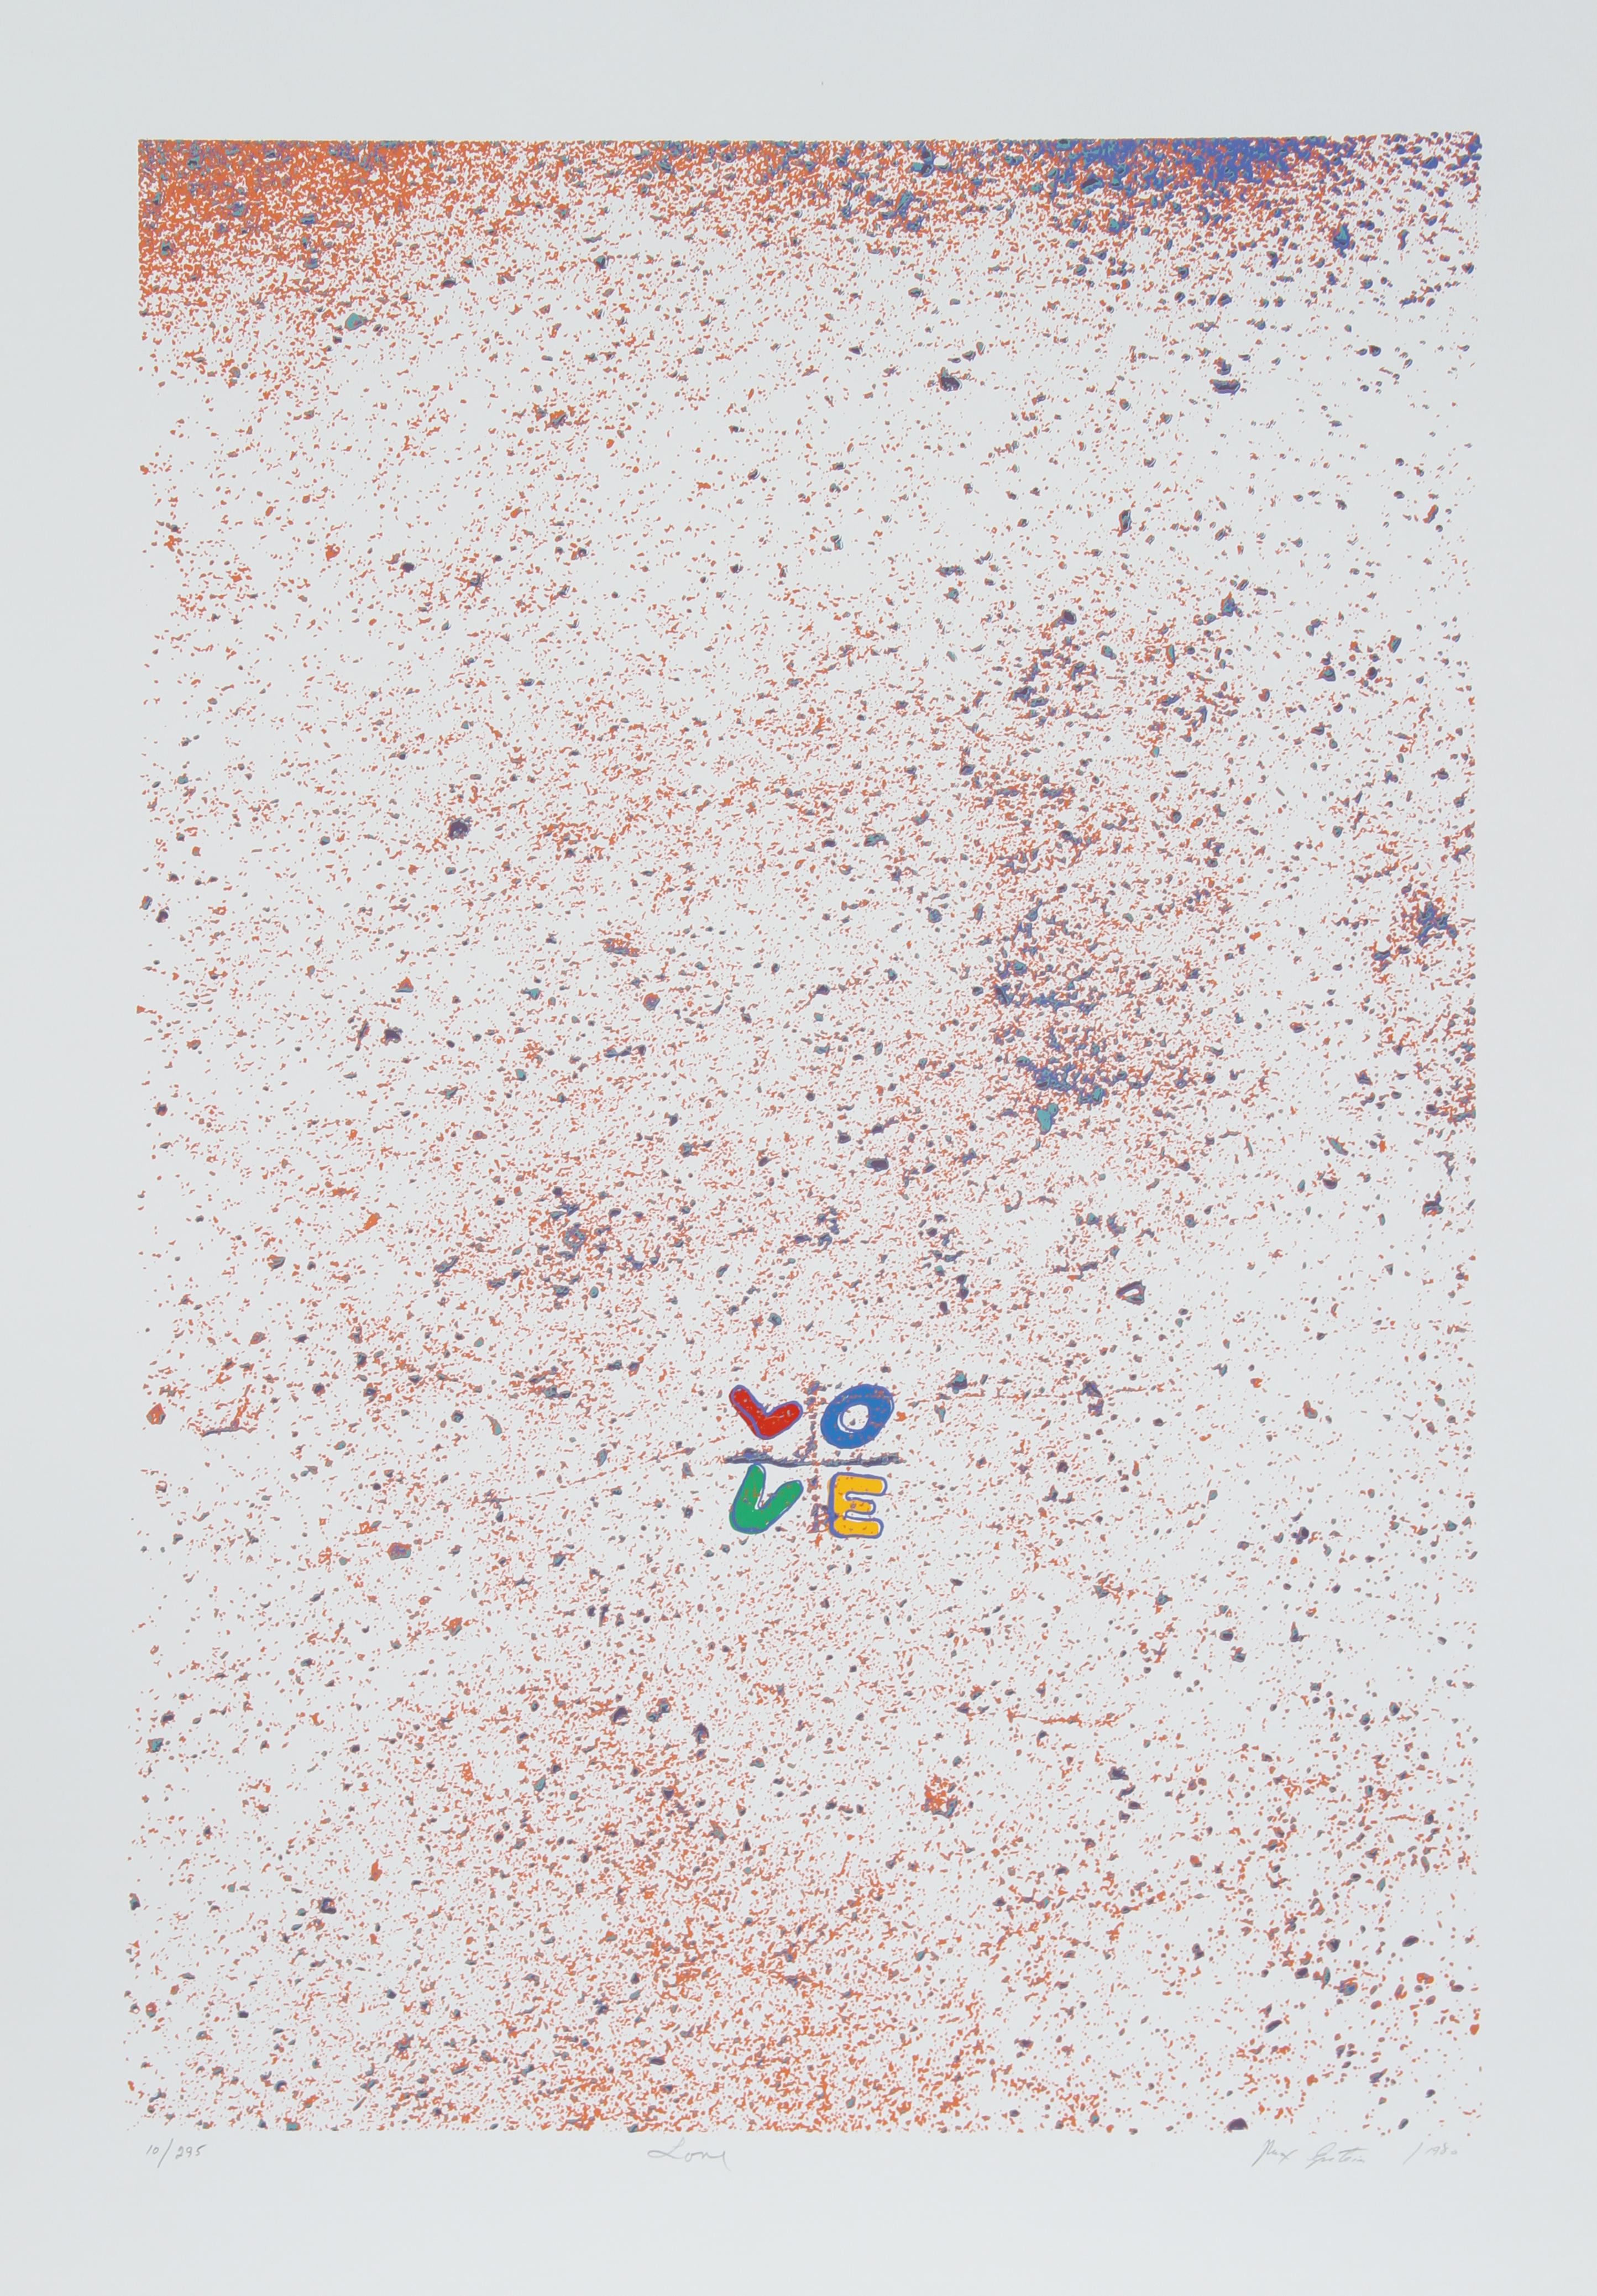 Artiste :  Max Epstein, Canadien (1932 - 2002)
Titre :  Amour
Année :  1980
Moyen :  Sérigraphie, signée et numérotée au crayon.
Edition :  295
Taille de l'image :  29 x 18,5 pouces
Taille :  35 po x 23 po (88,9 cm x 58,42 cm)